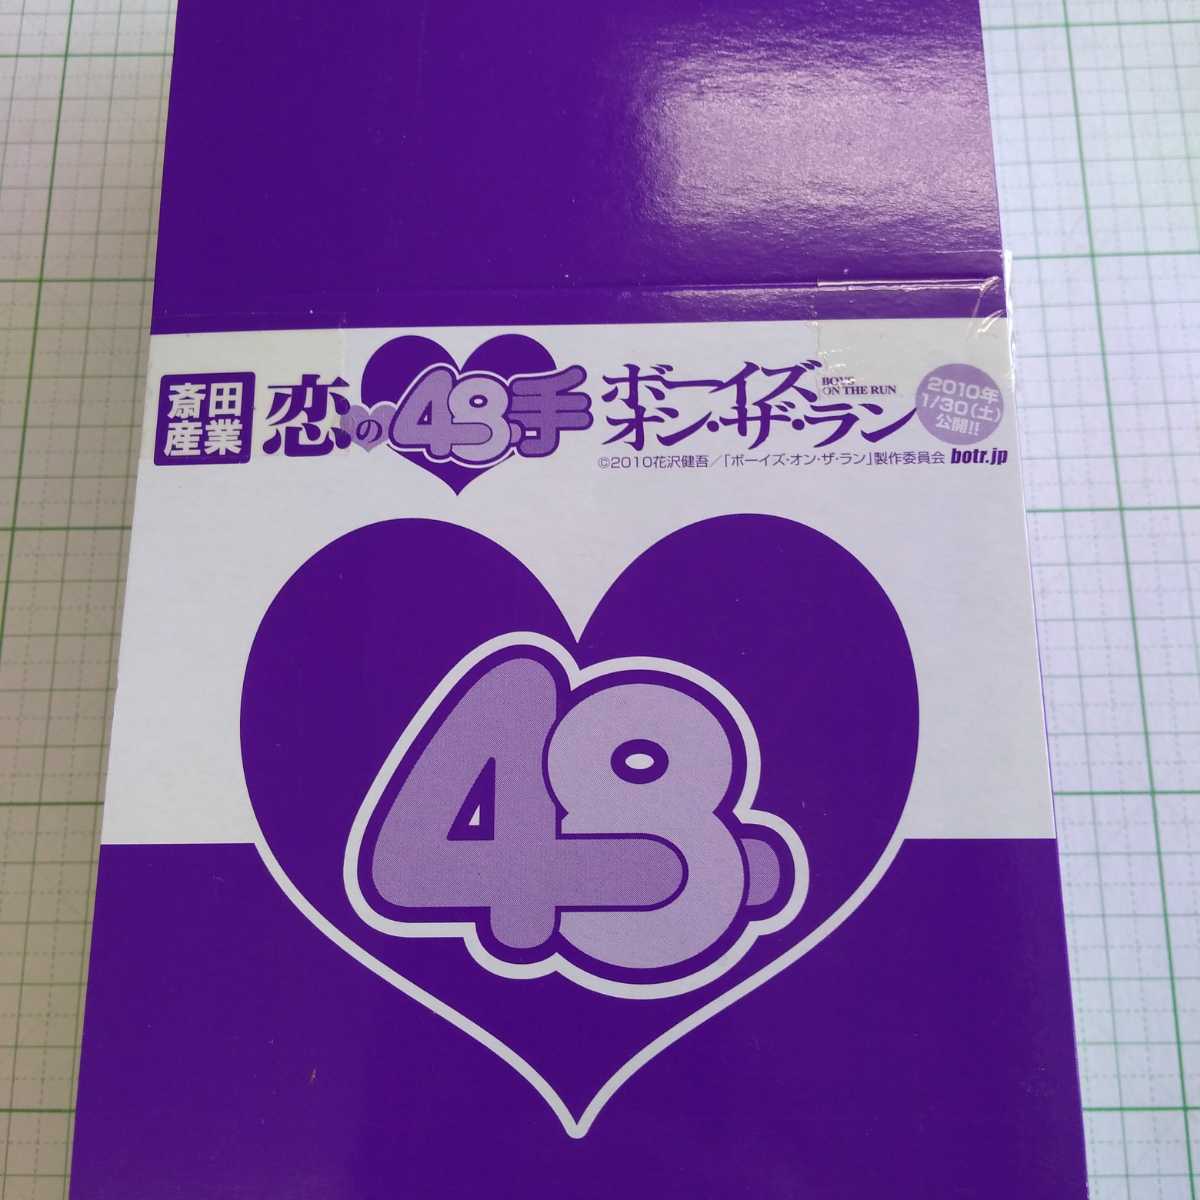 恋の48手 体位フィギュア ミニフィギュア セクシー エロ ジョーク 1BOX(10個入り) ボーイズ・オン・ザ・ランの画像3